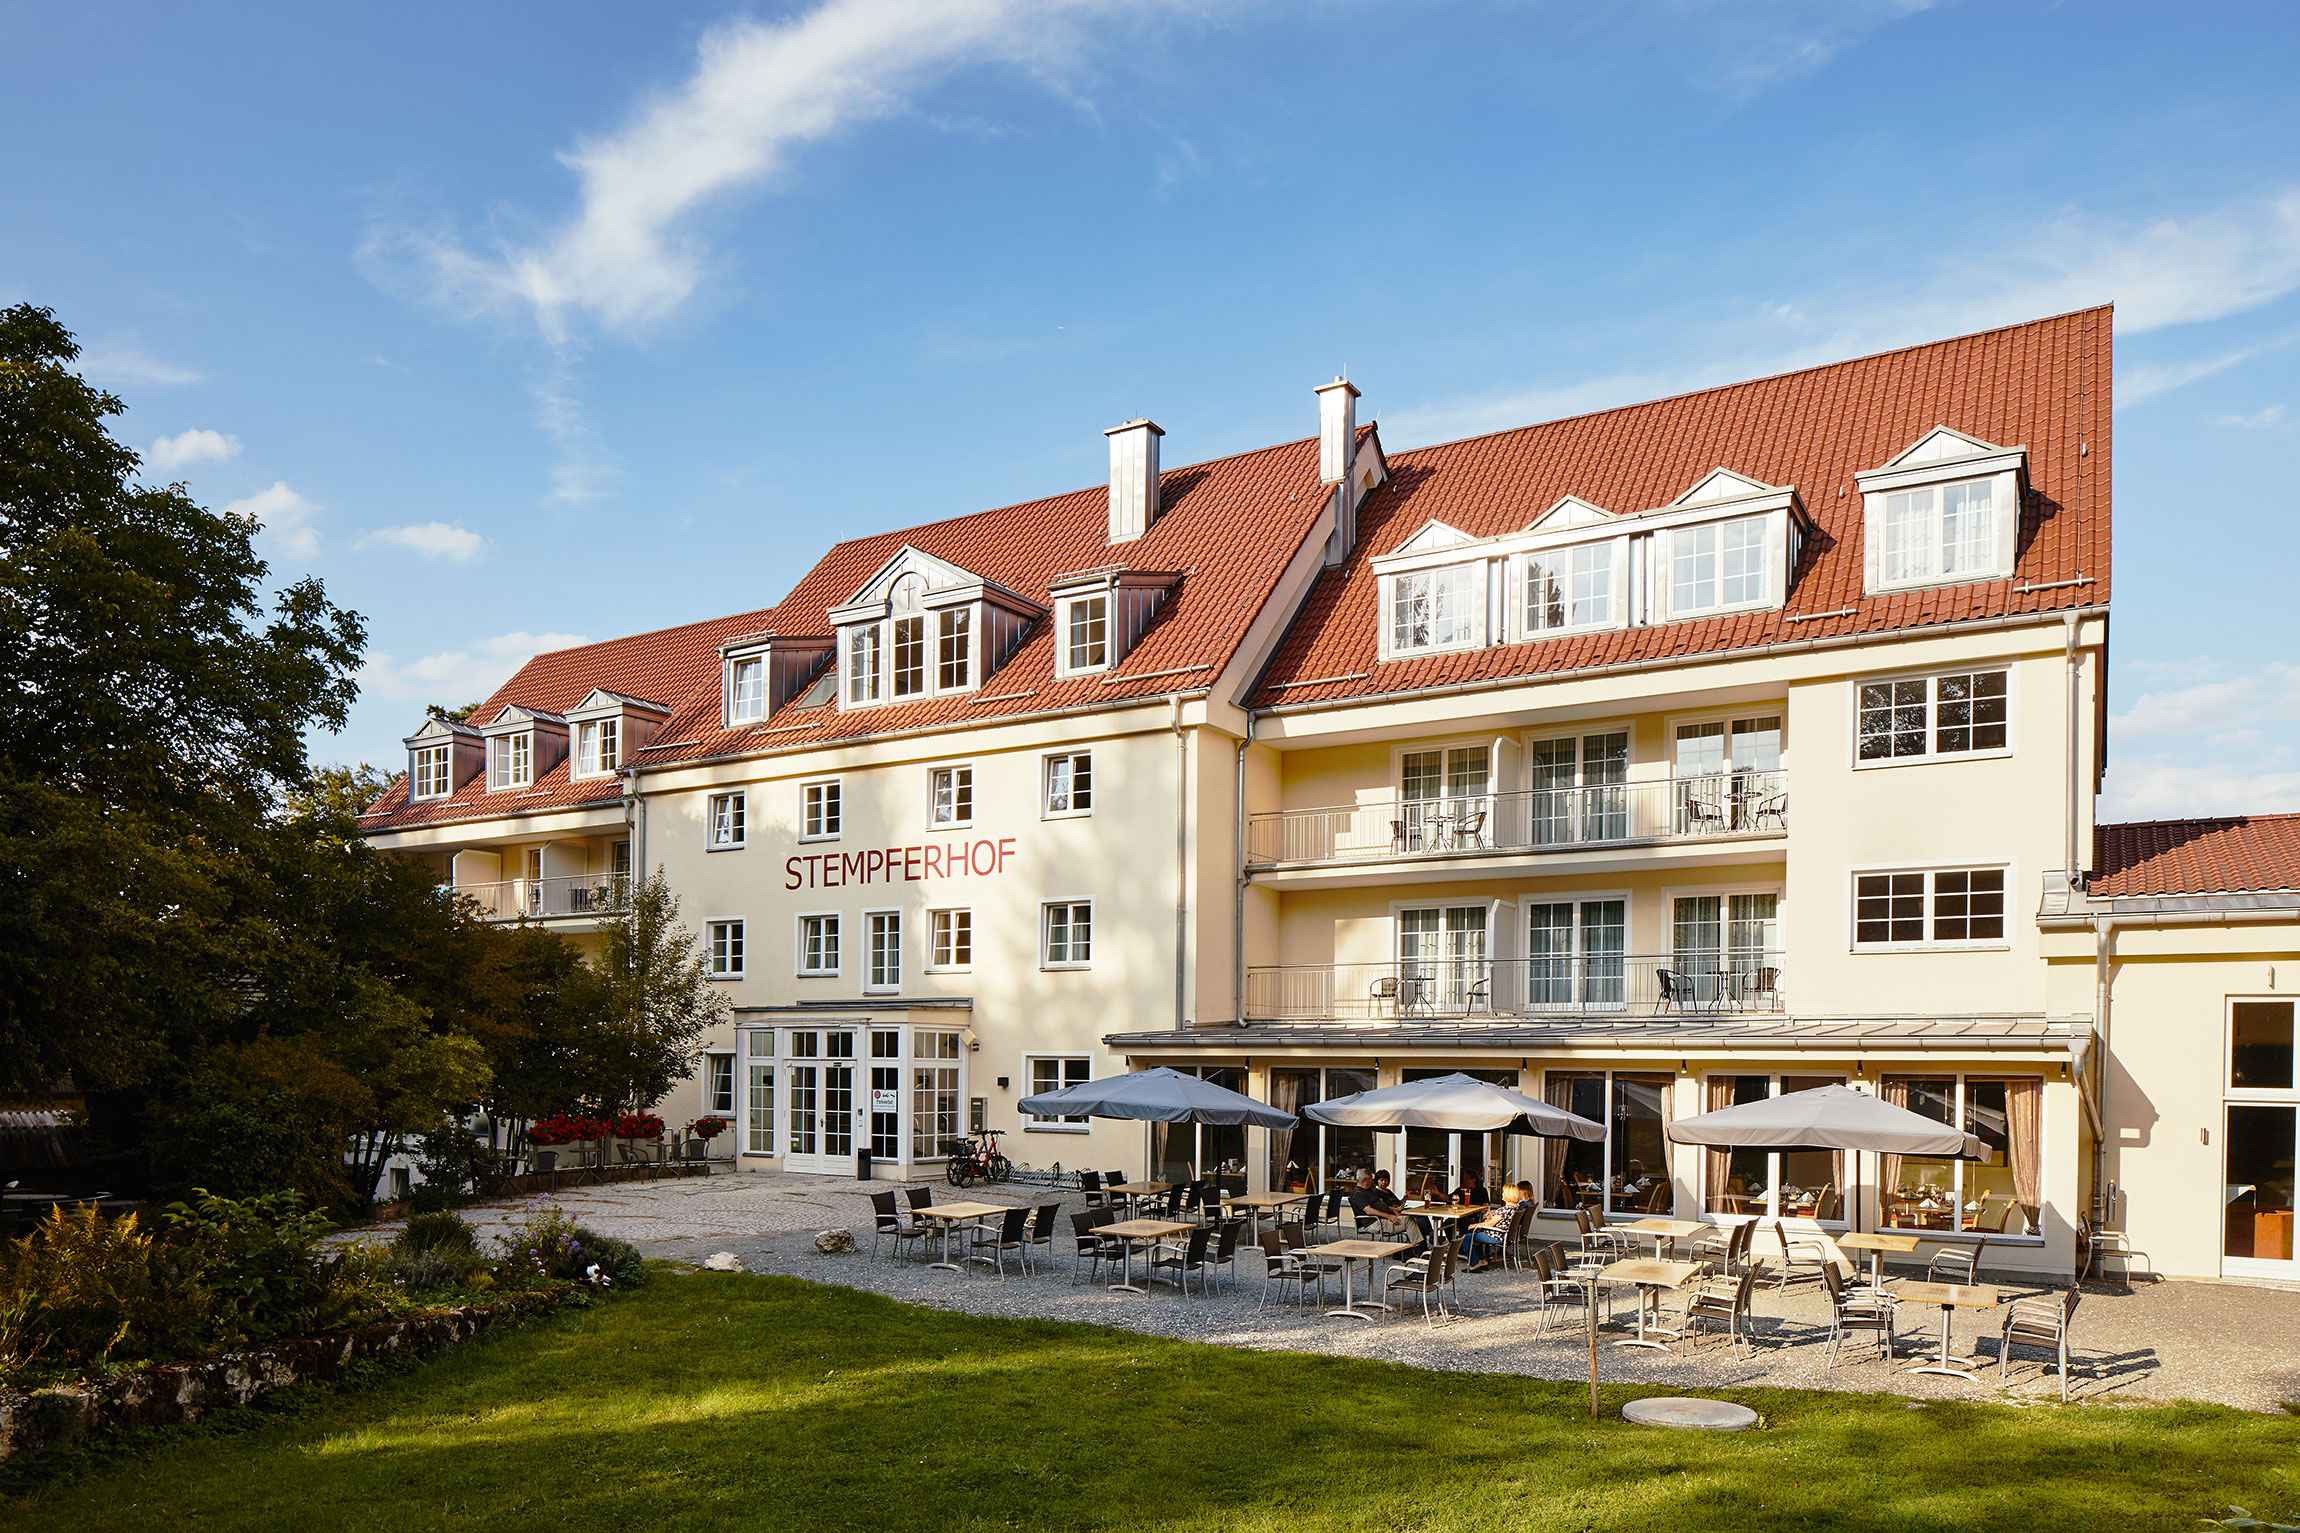 Hotel Stempferhof <br/>117.00 ew <br/> <a href='http://vakantieoplossing.nl/outpage/?id=b2fe49d7ecda5ff73d13431e4cb91bce' target='_blank'>View Details</a>